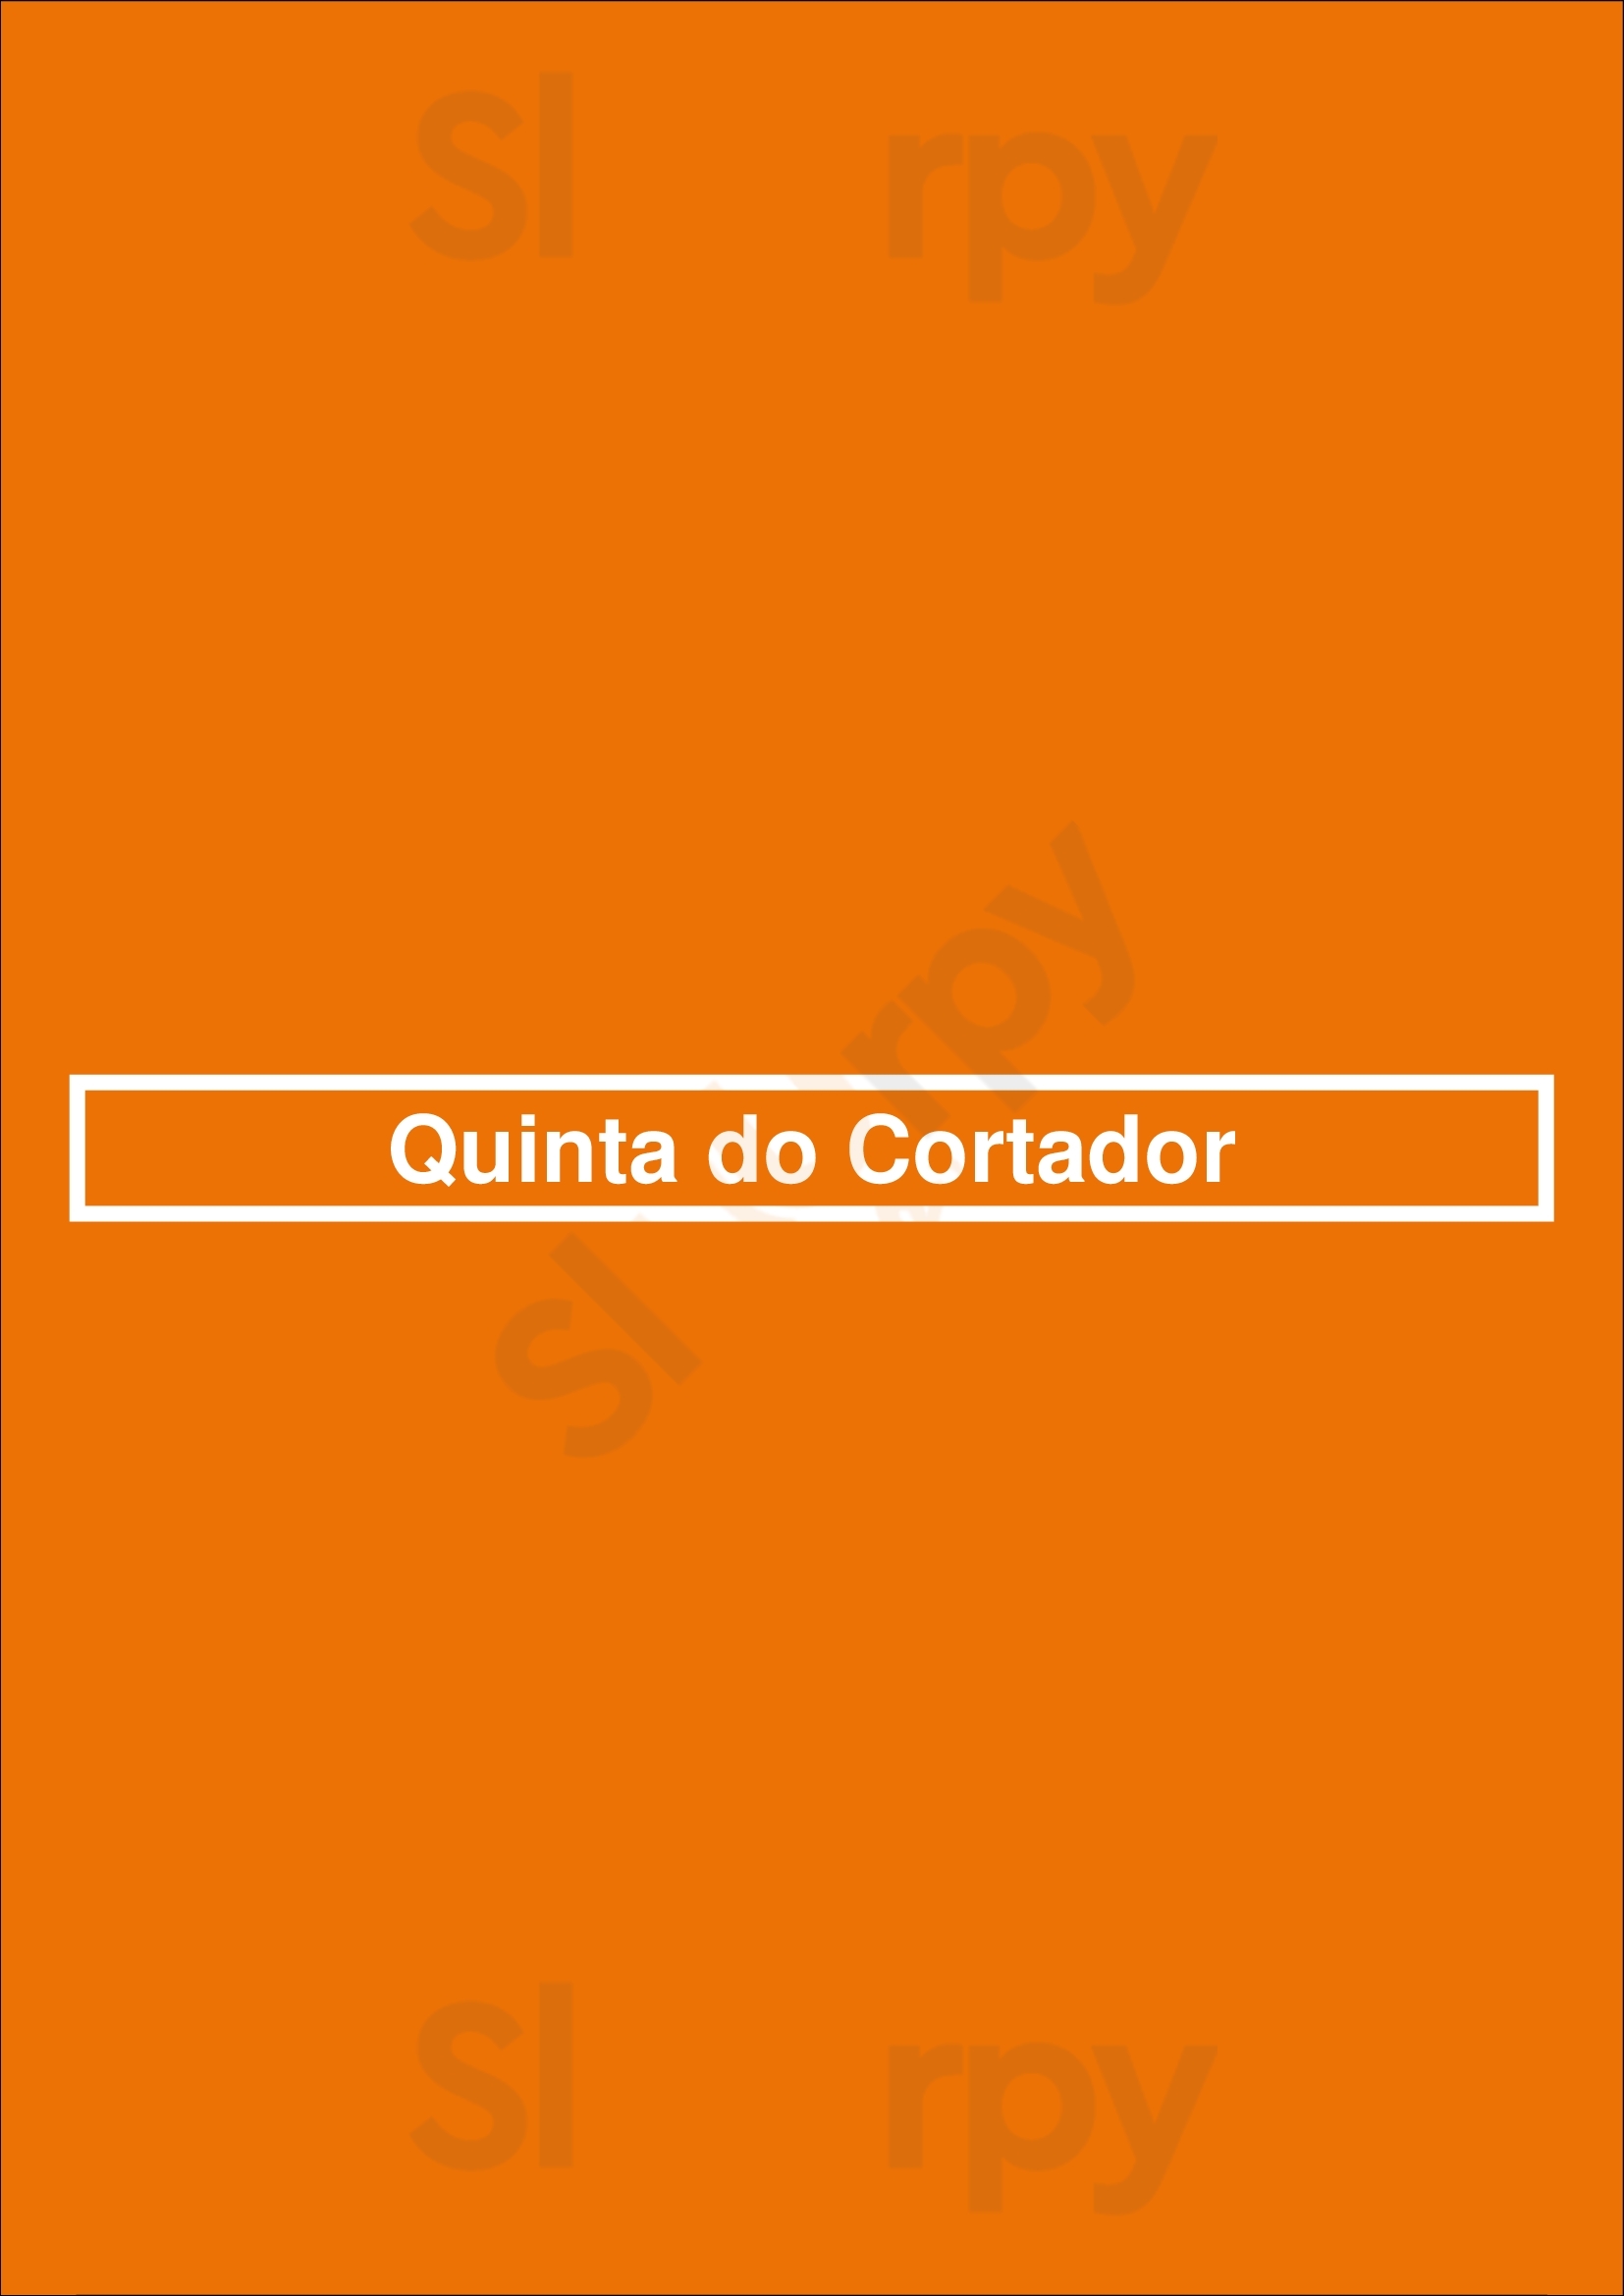 Quinta Do Cortador Cascais Menu - 1